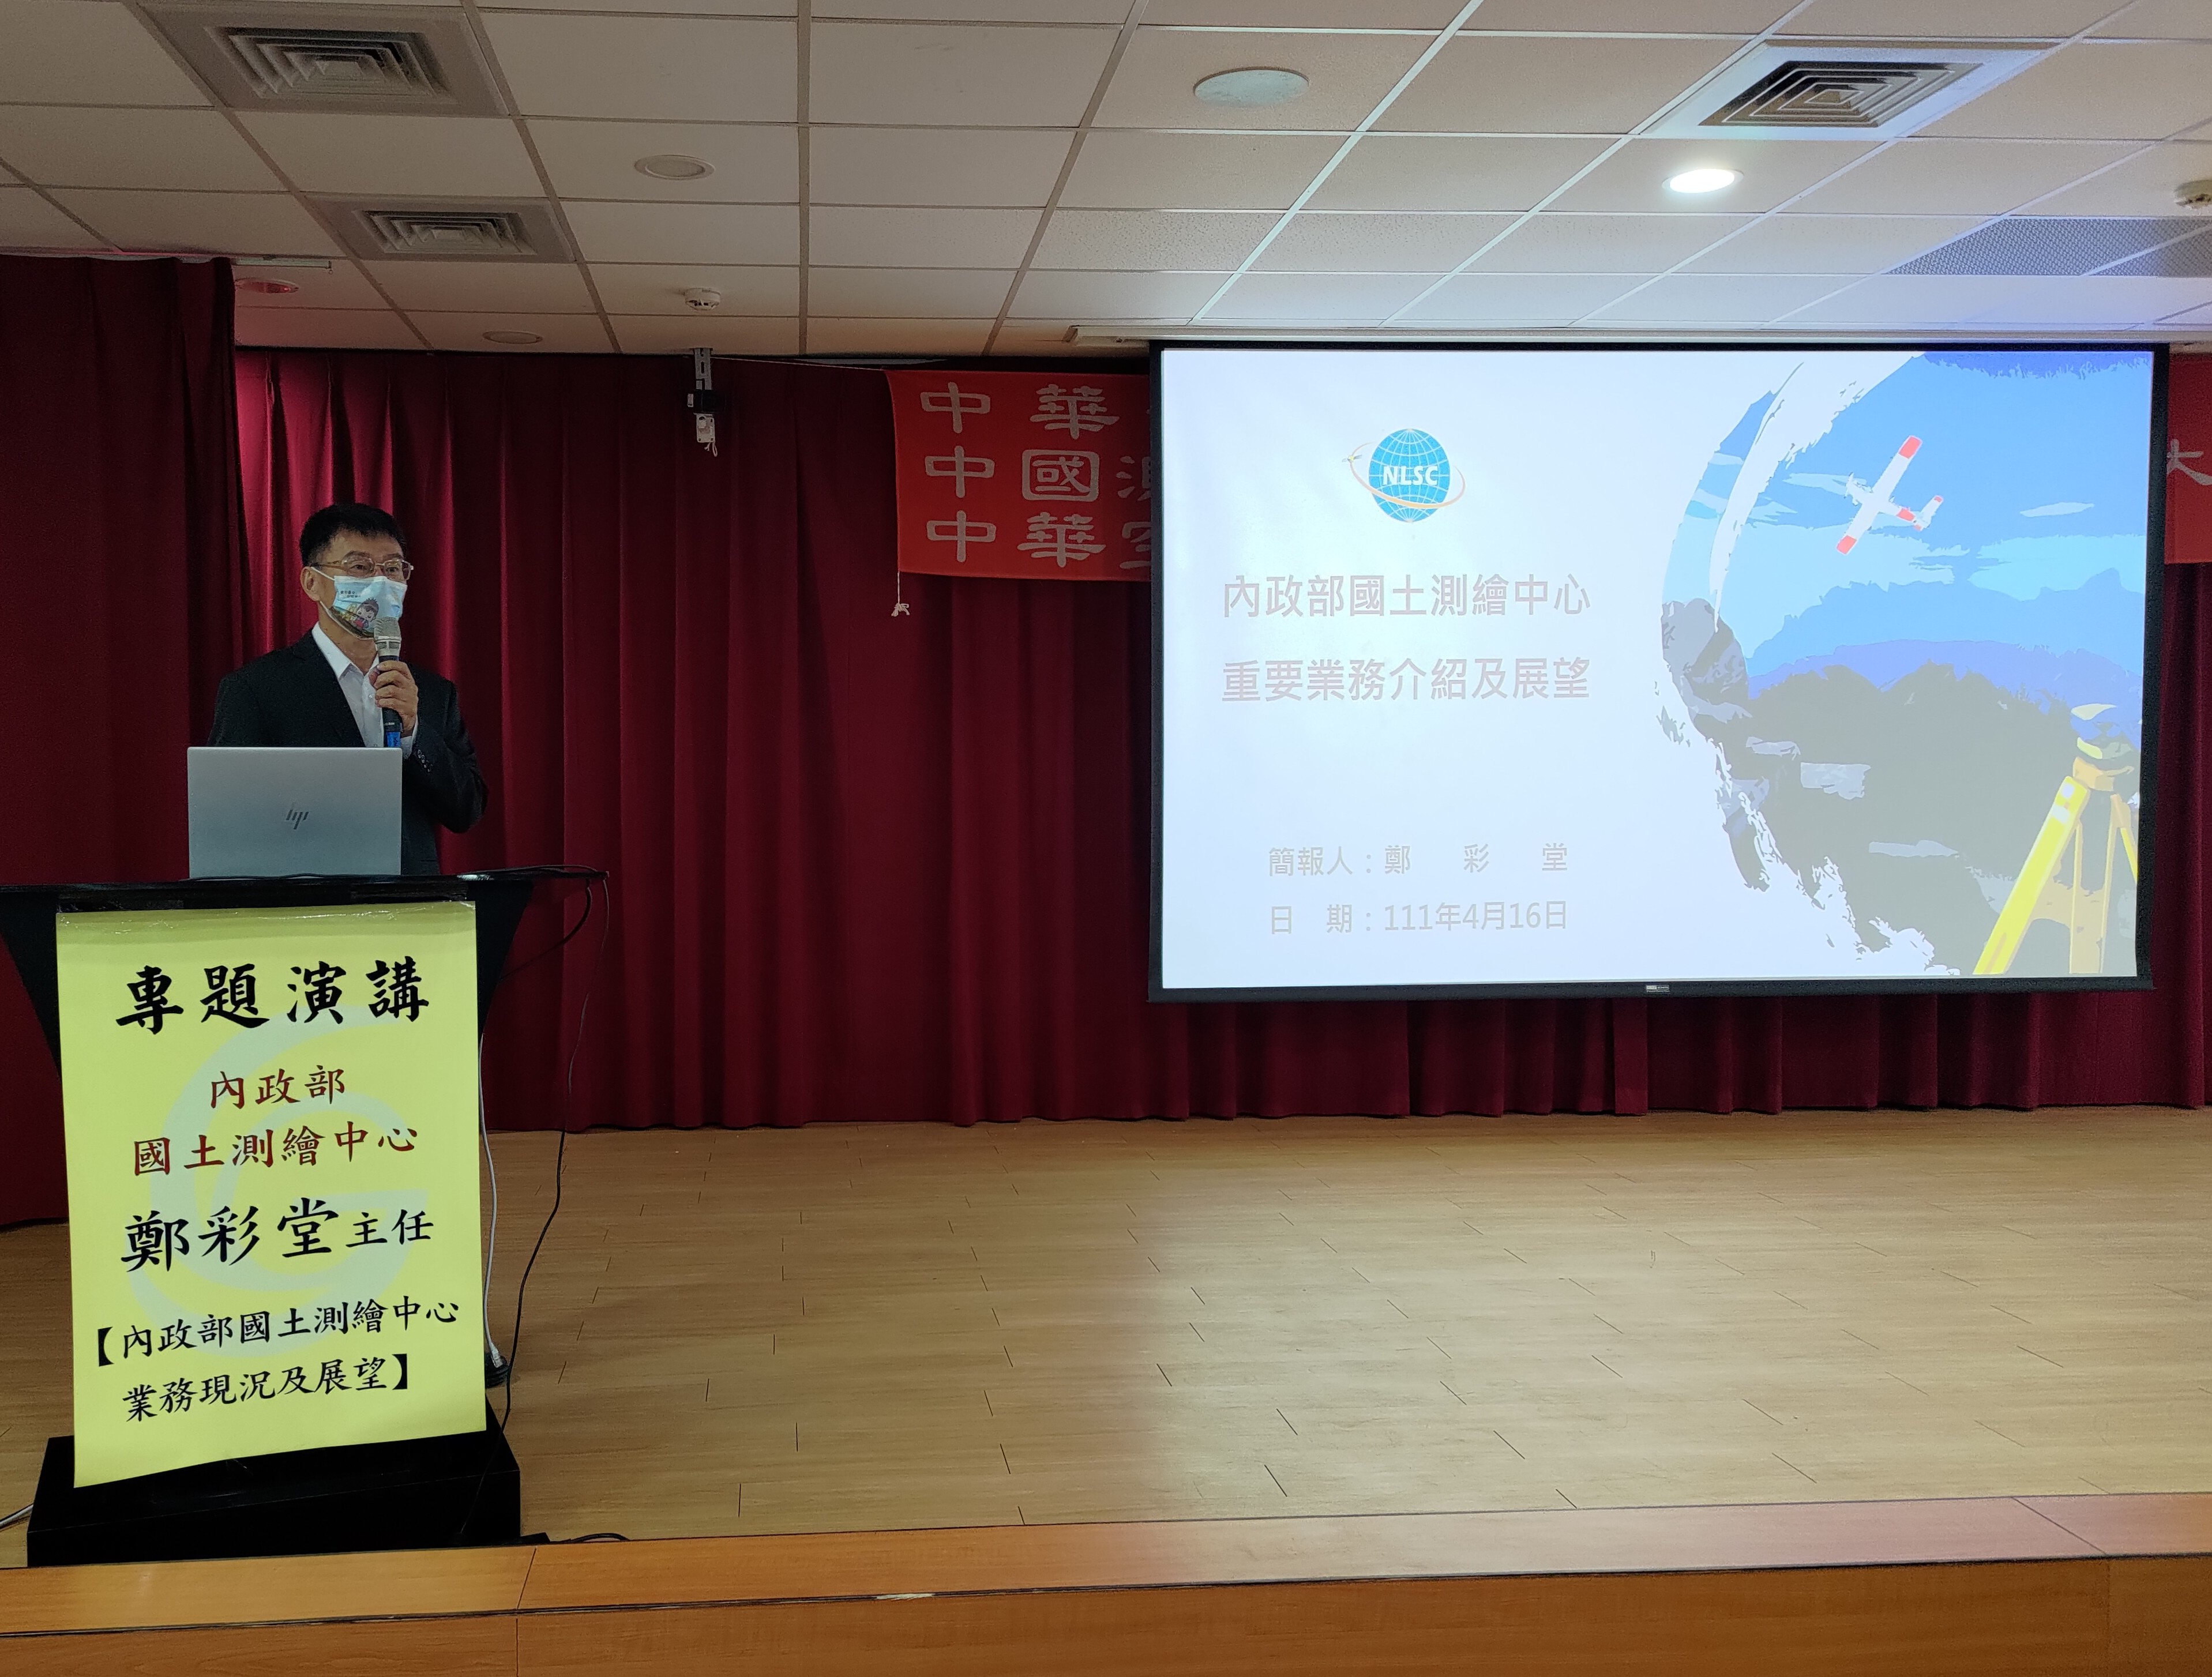 本中心鄭主任彩堂出席中華測繪聯合會、中國測量工程學會及中華空間資訊學會聯合年會專題演講。